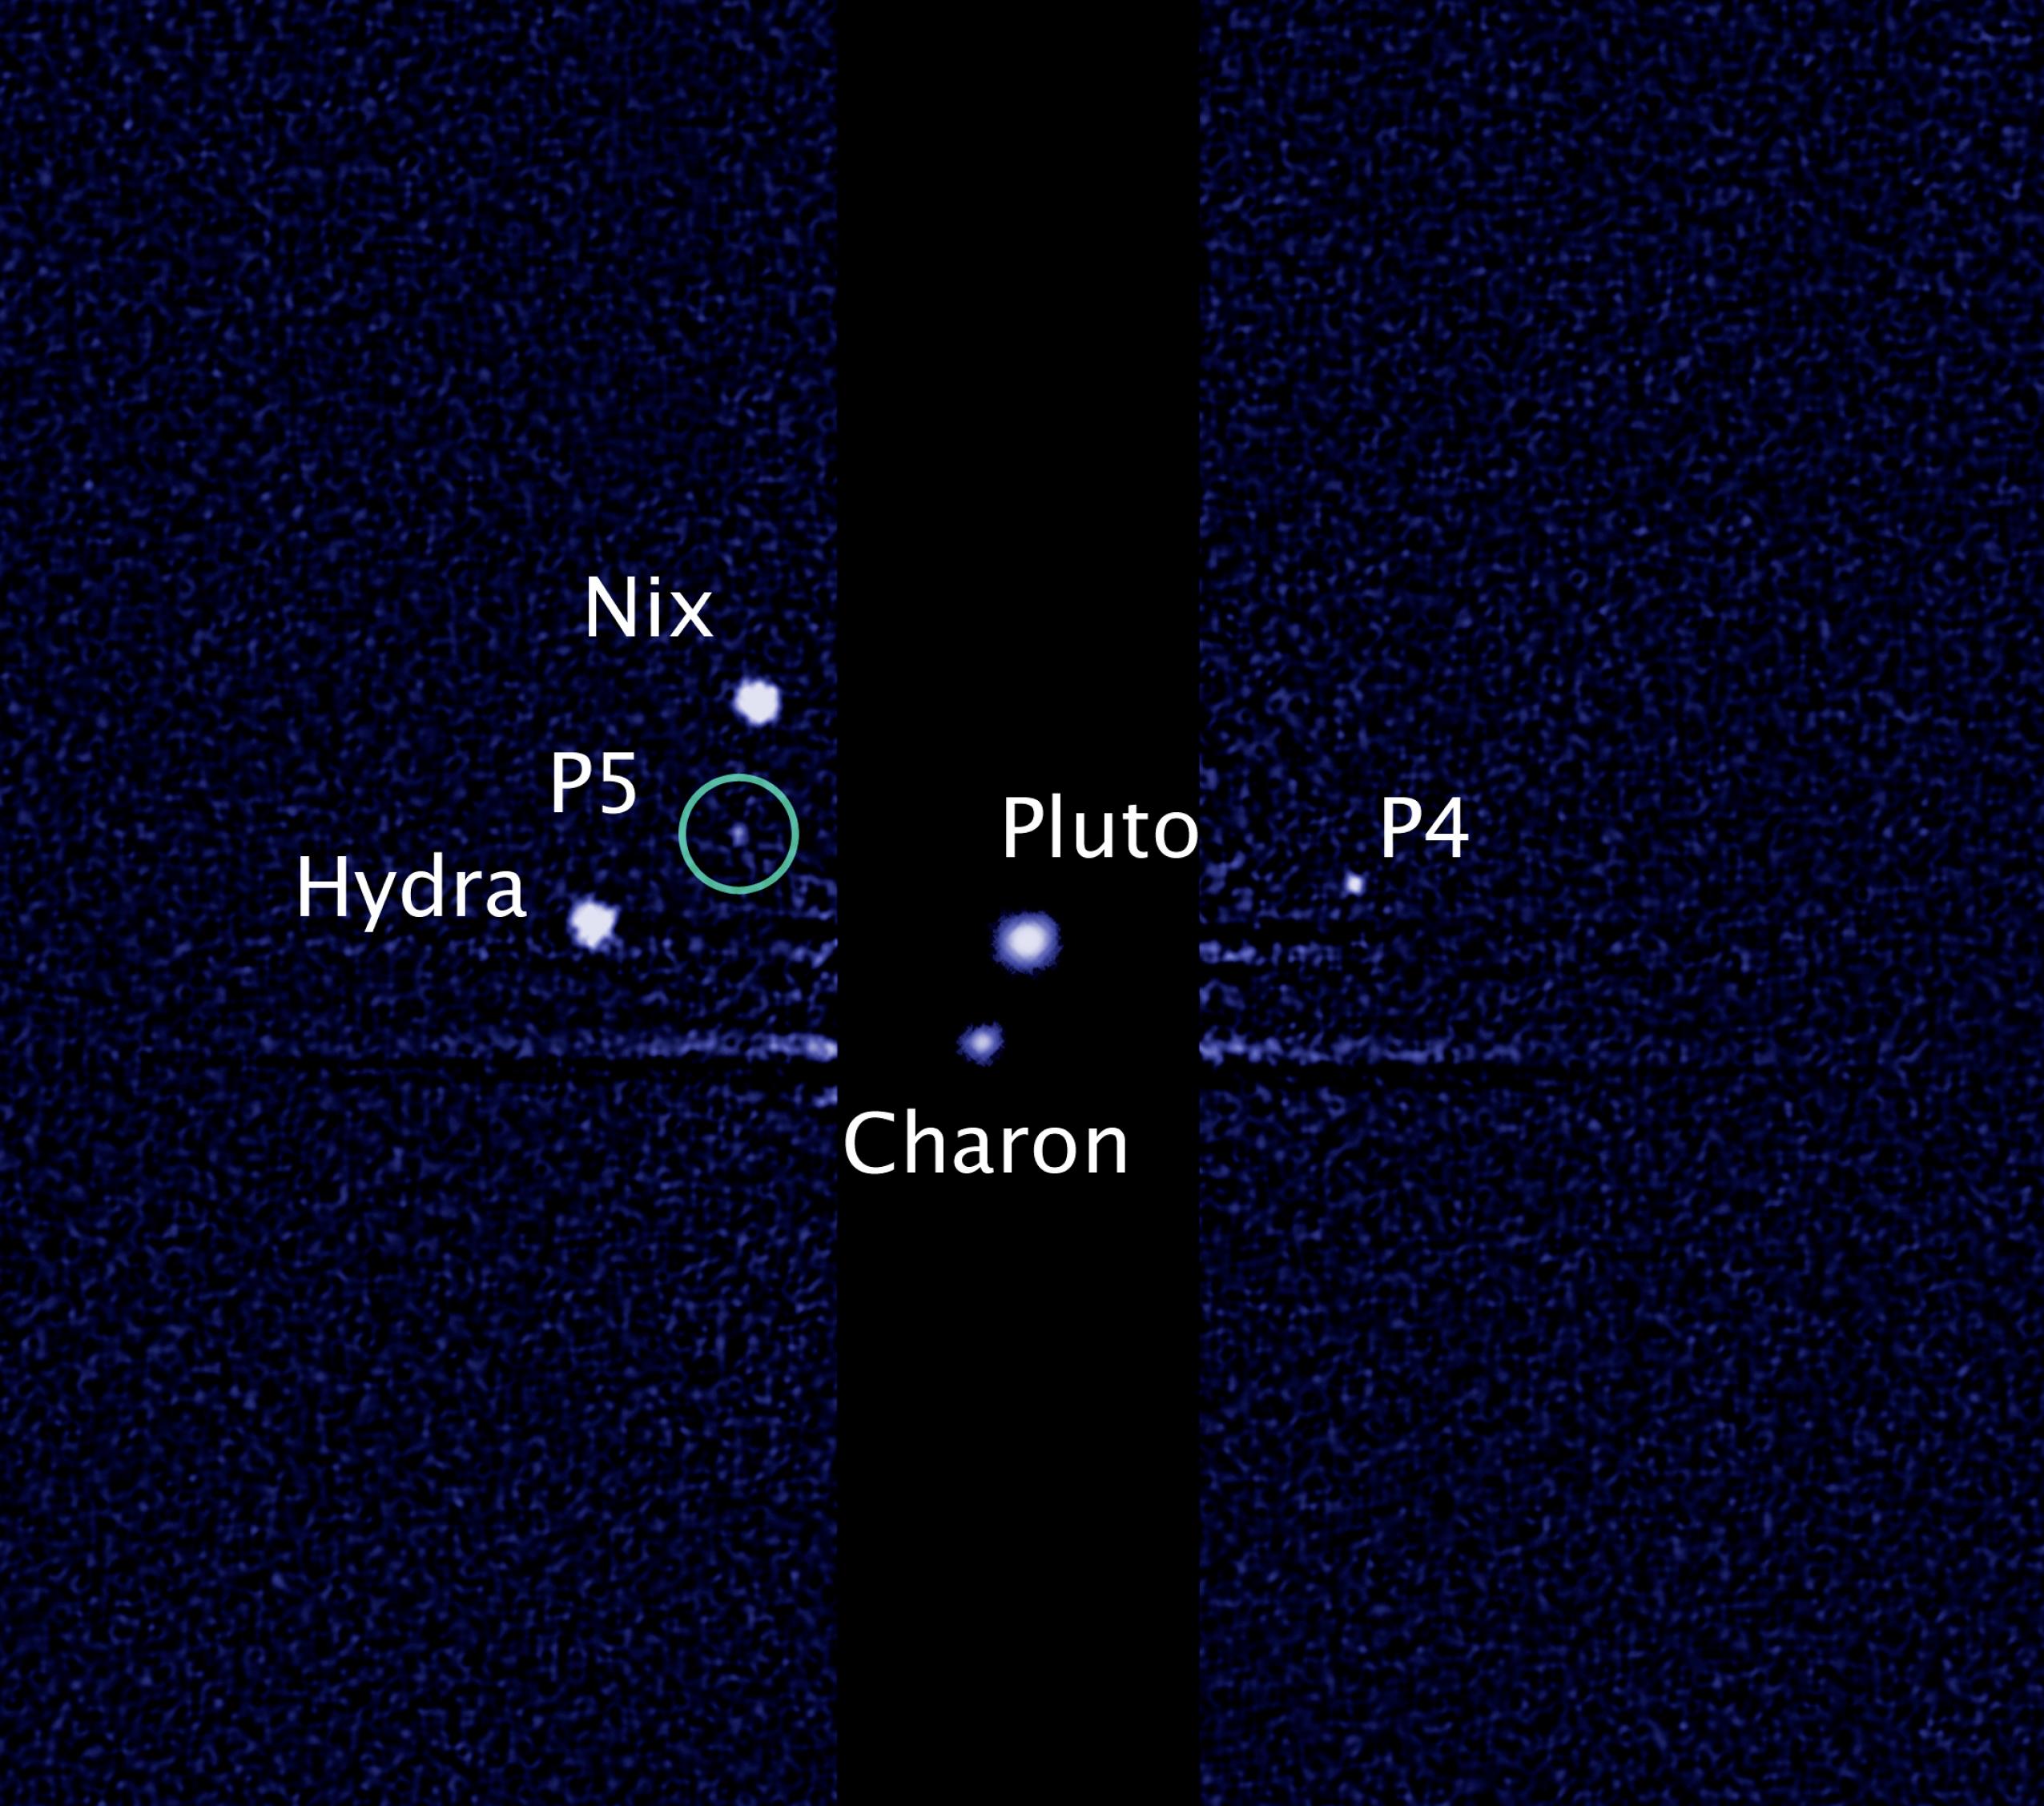 Pluto und seine seit 2012 fünf bekannten Monde sind damals nur als Pünktchen erkennbar